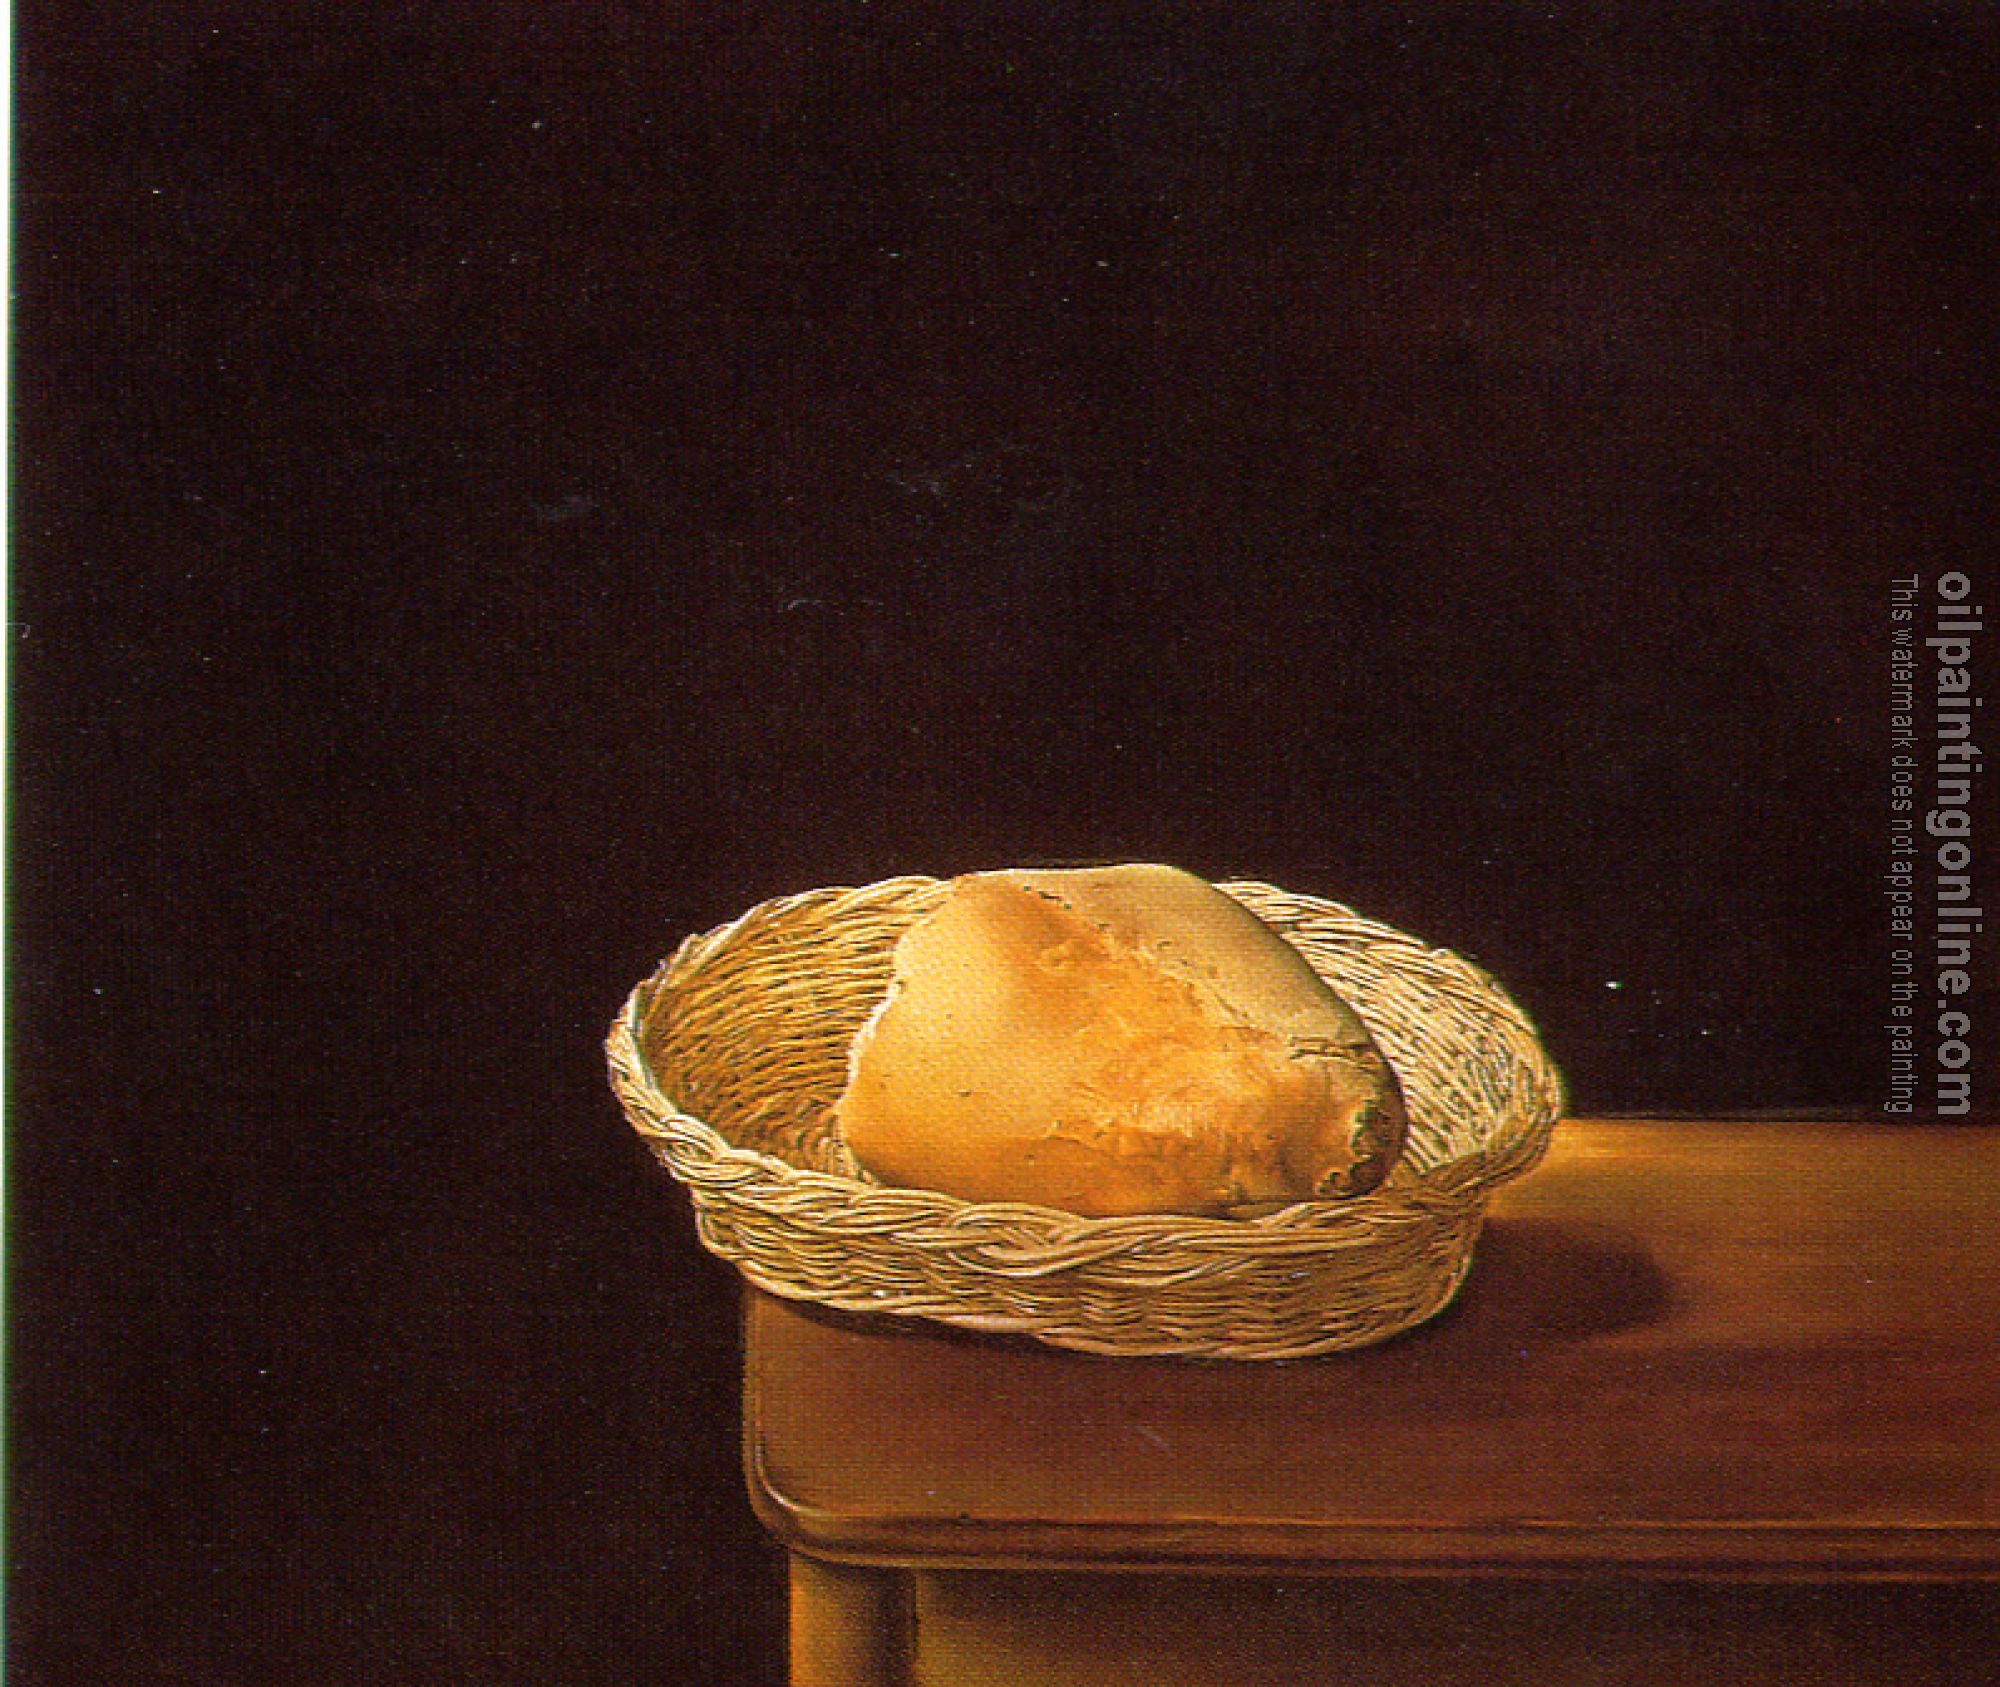 Dali, Salvador - Basket of Bread-Rather Death than Shame